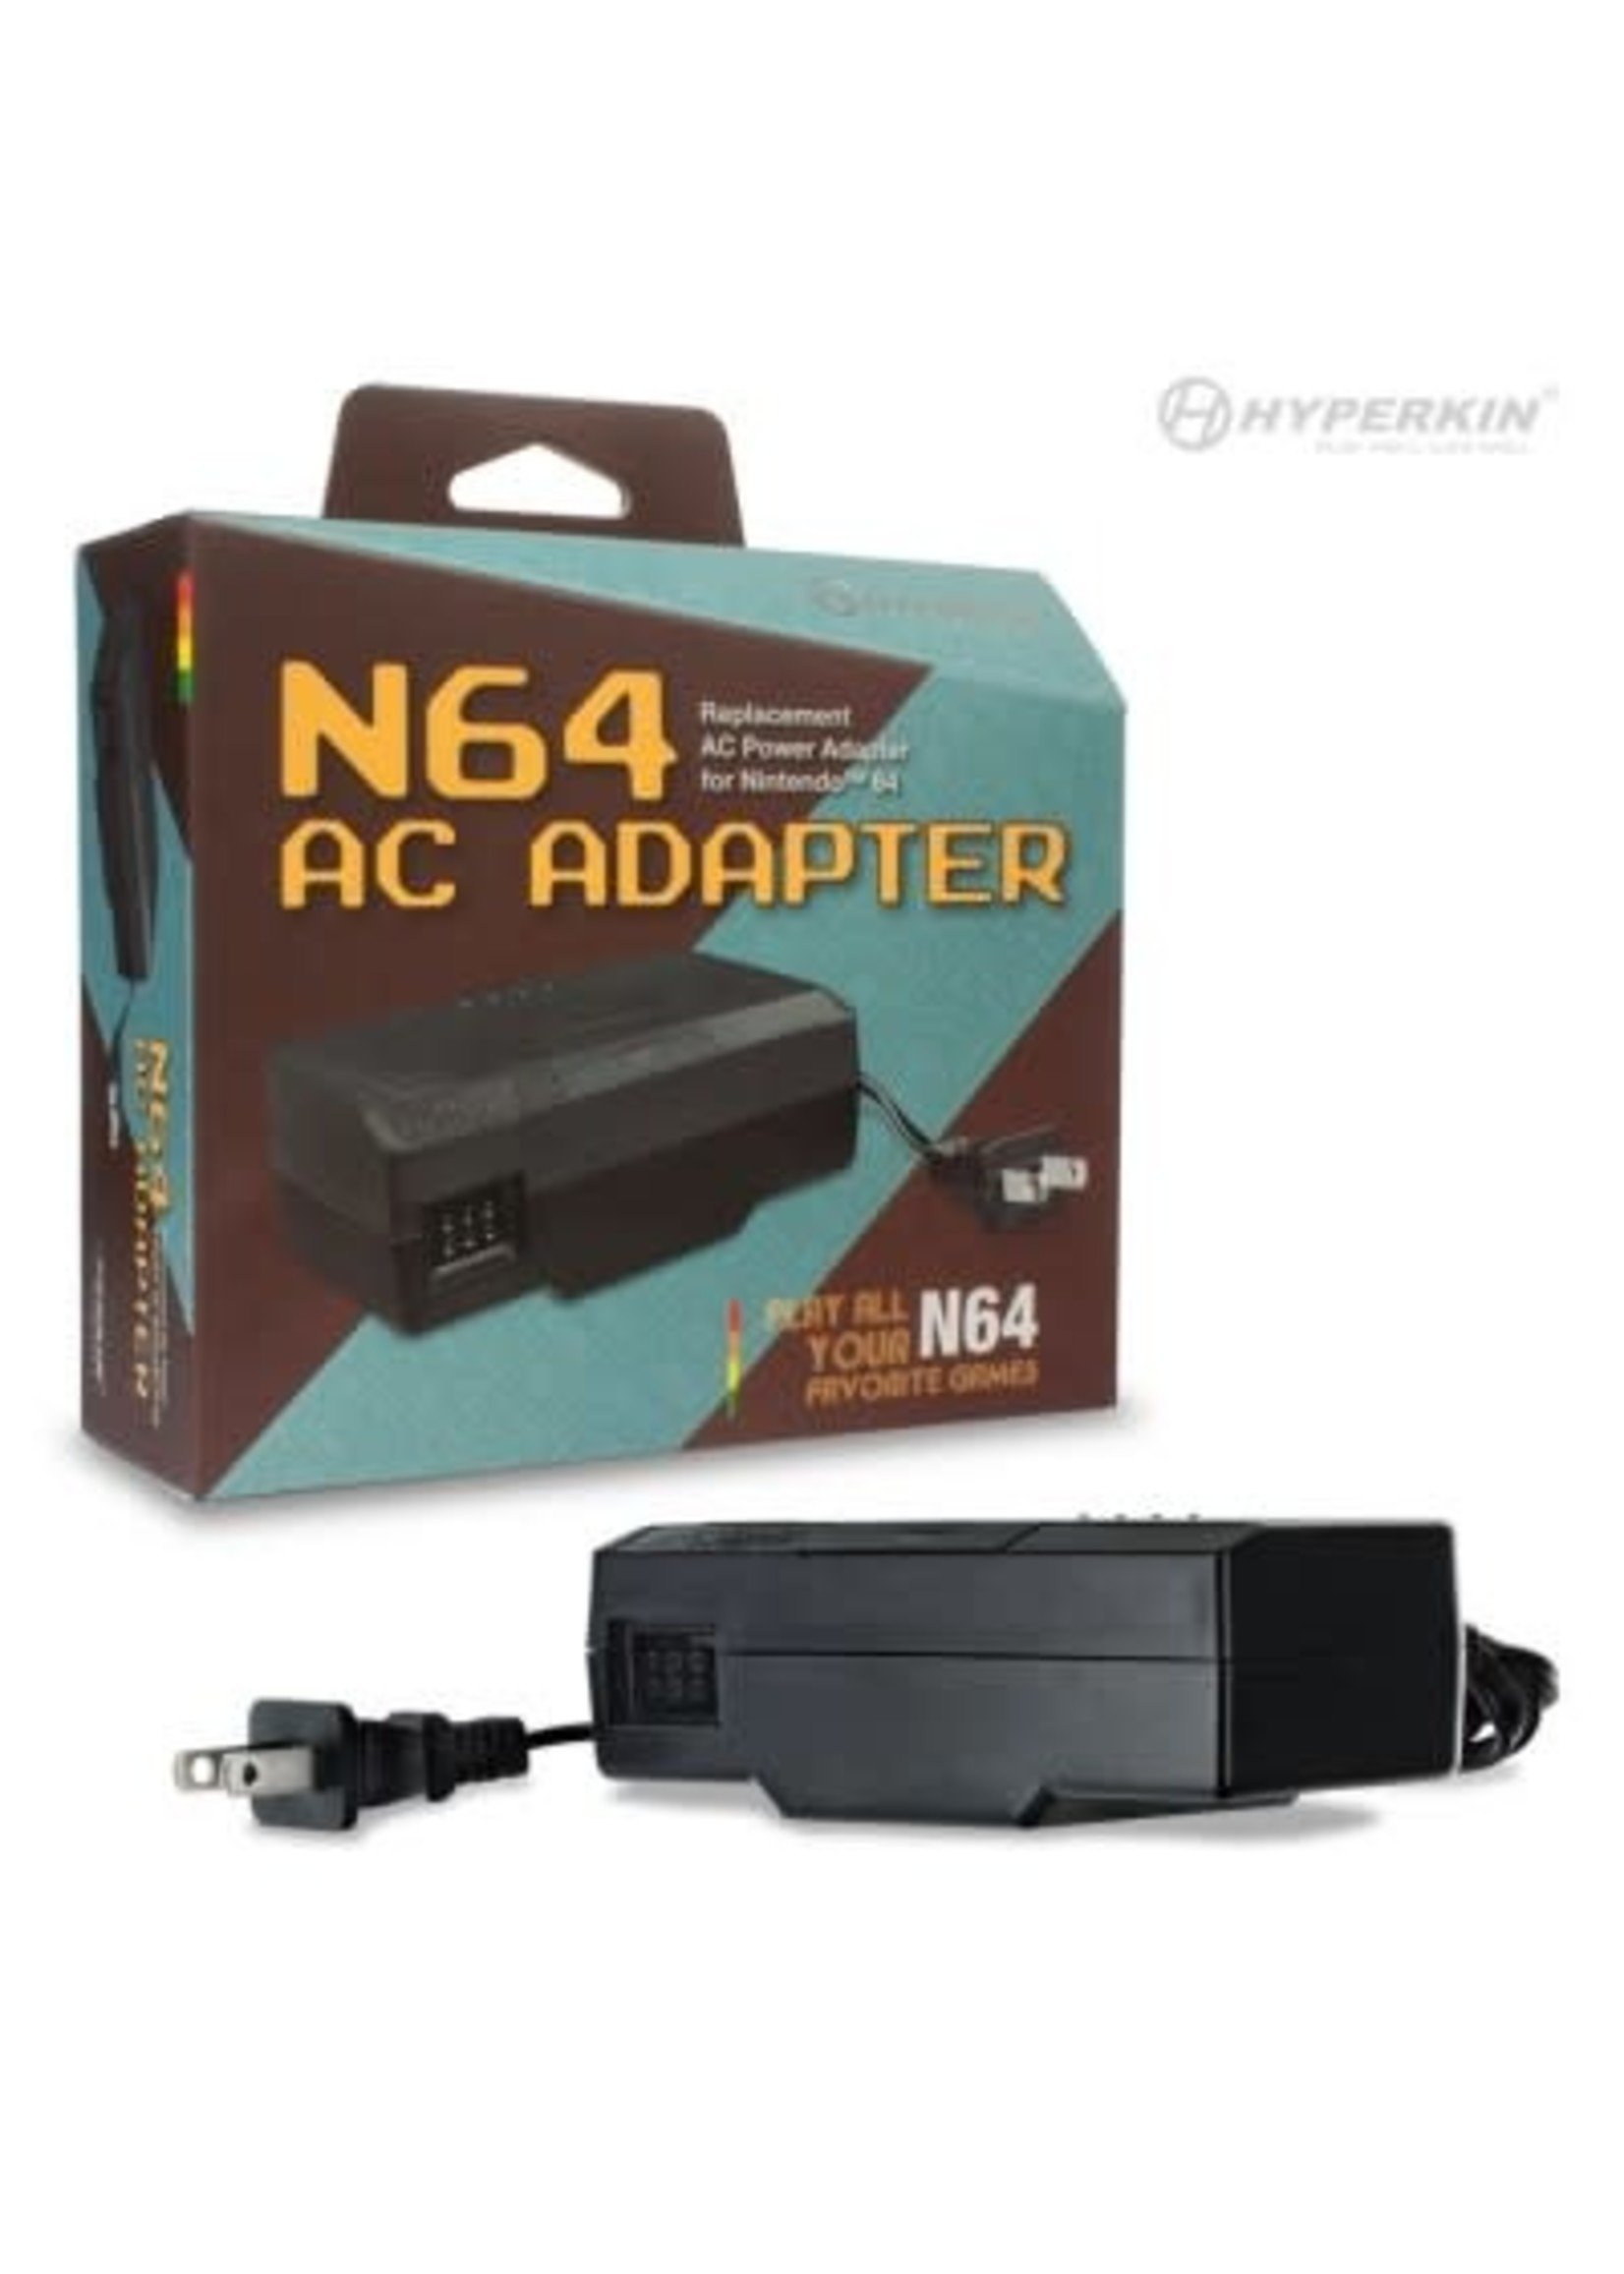 Nintendo 64 (N64) N64 AC Adapter Hyperkin